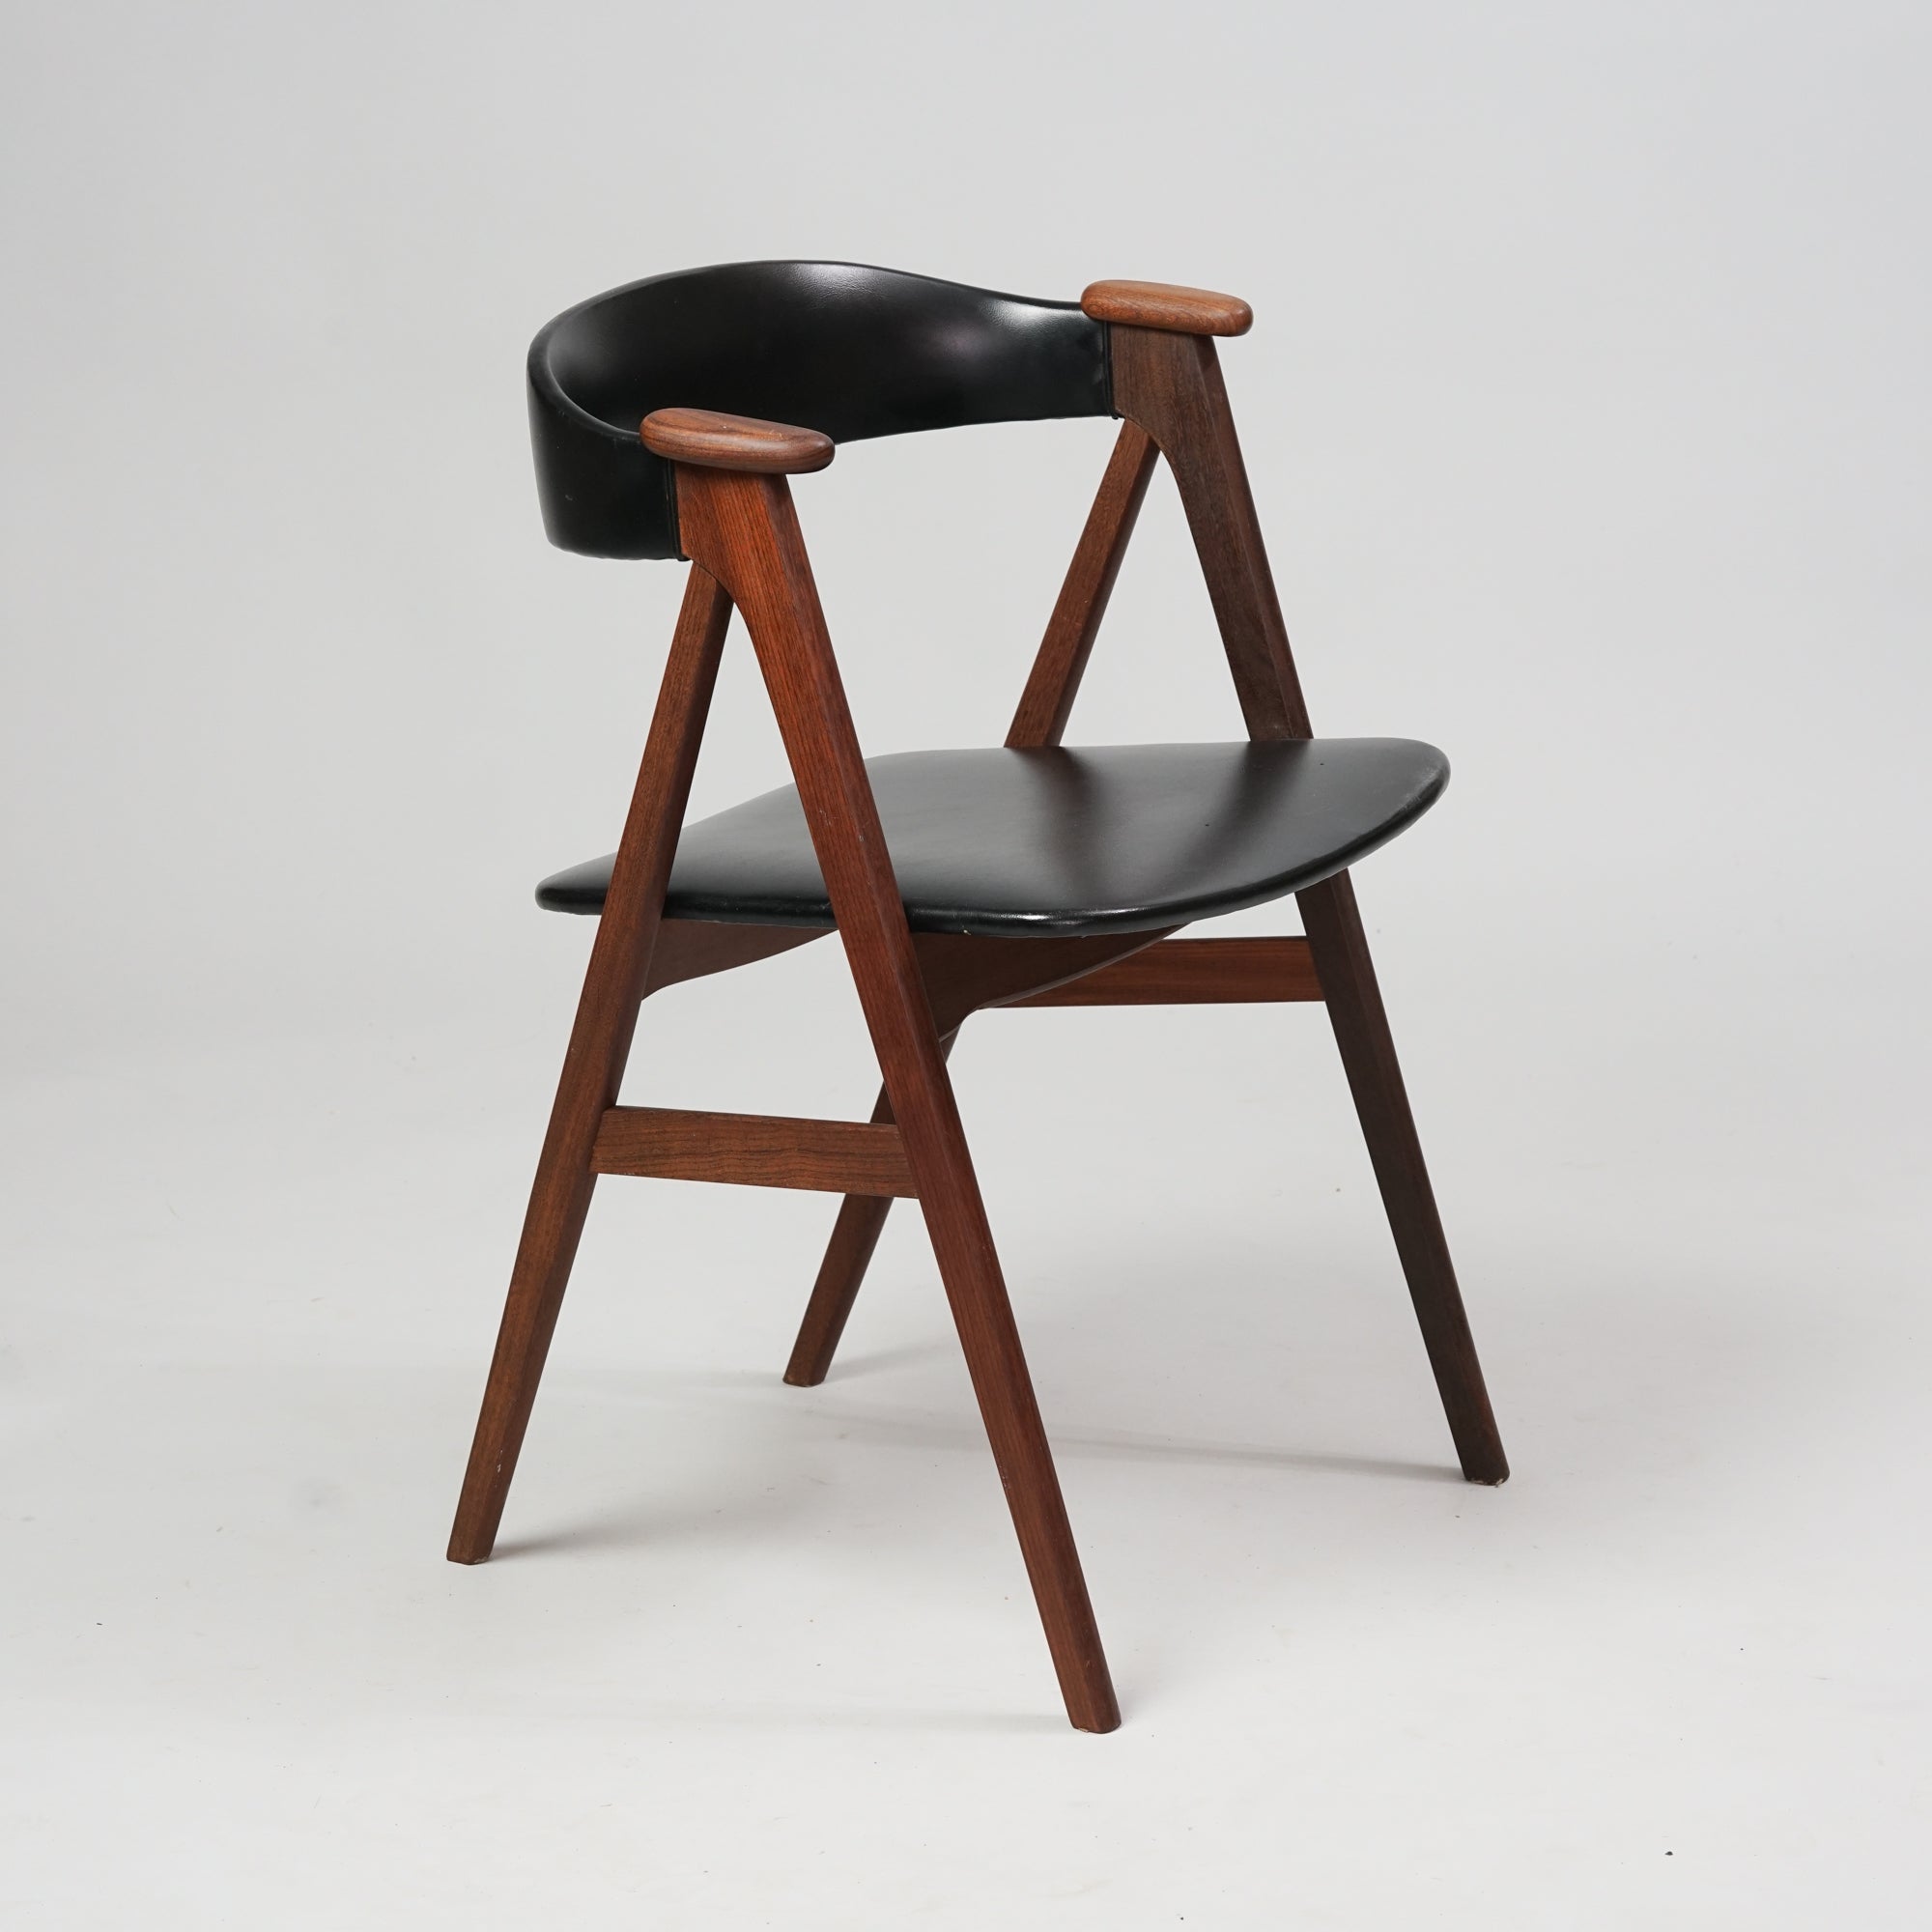 Tiikistä tehty tuoli, jossa keinonahkainen istuin ja selkänoja.